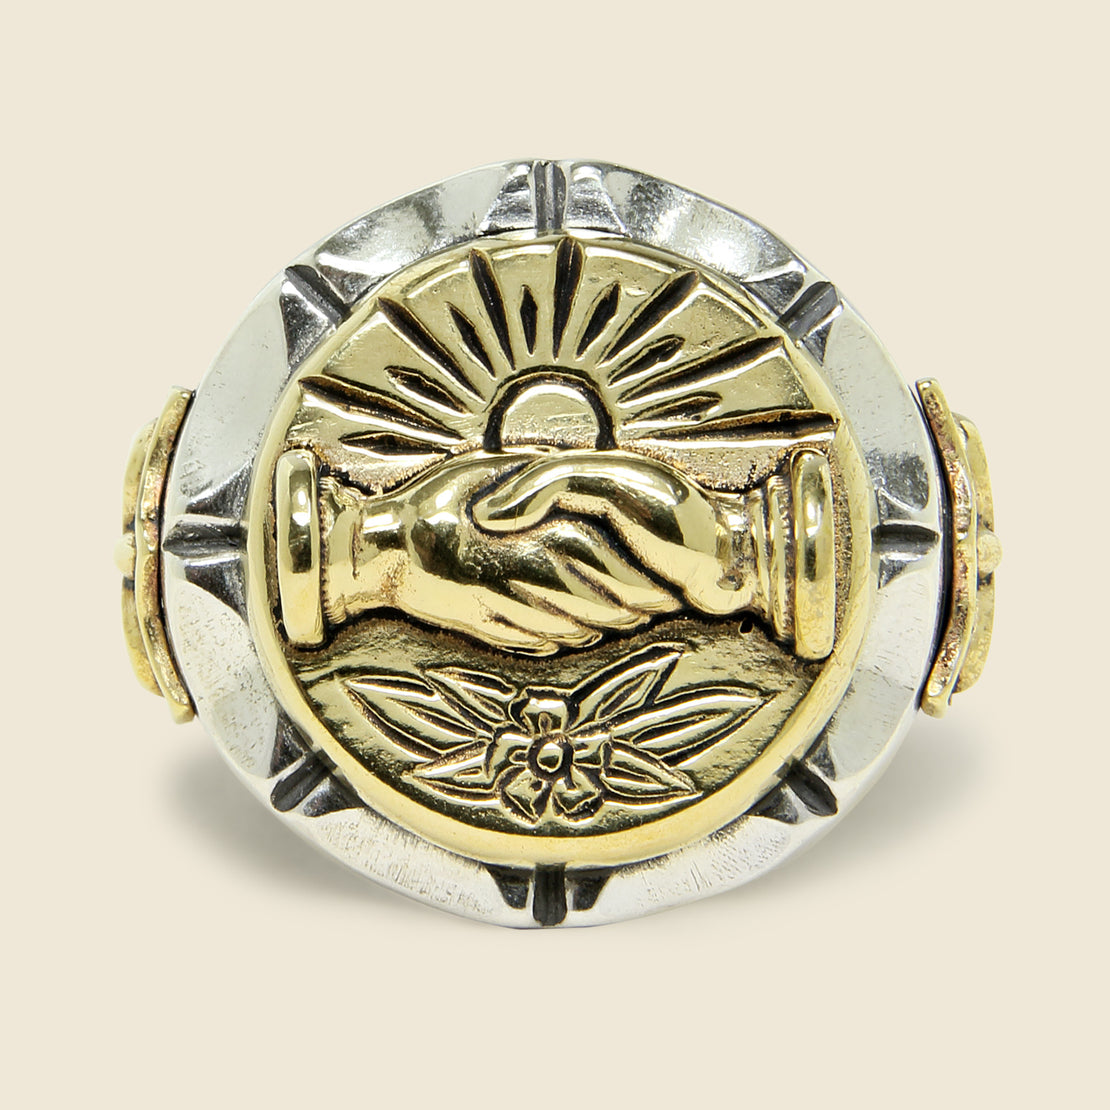 Fellowship Souvenir Ring - Silver/Brass